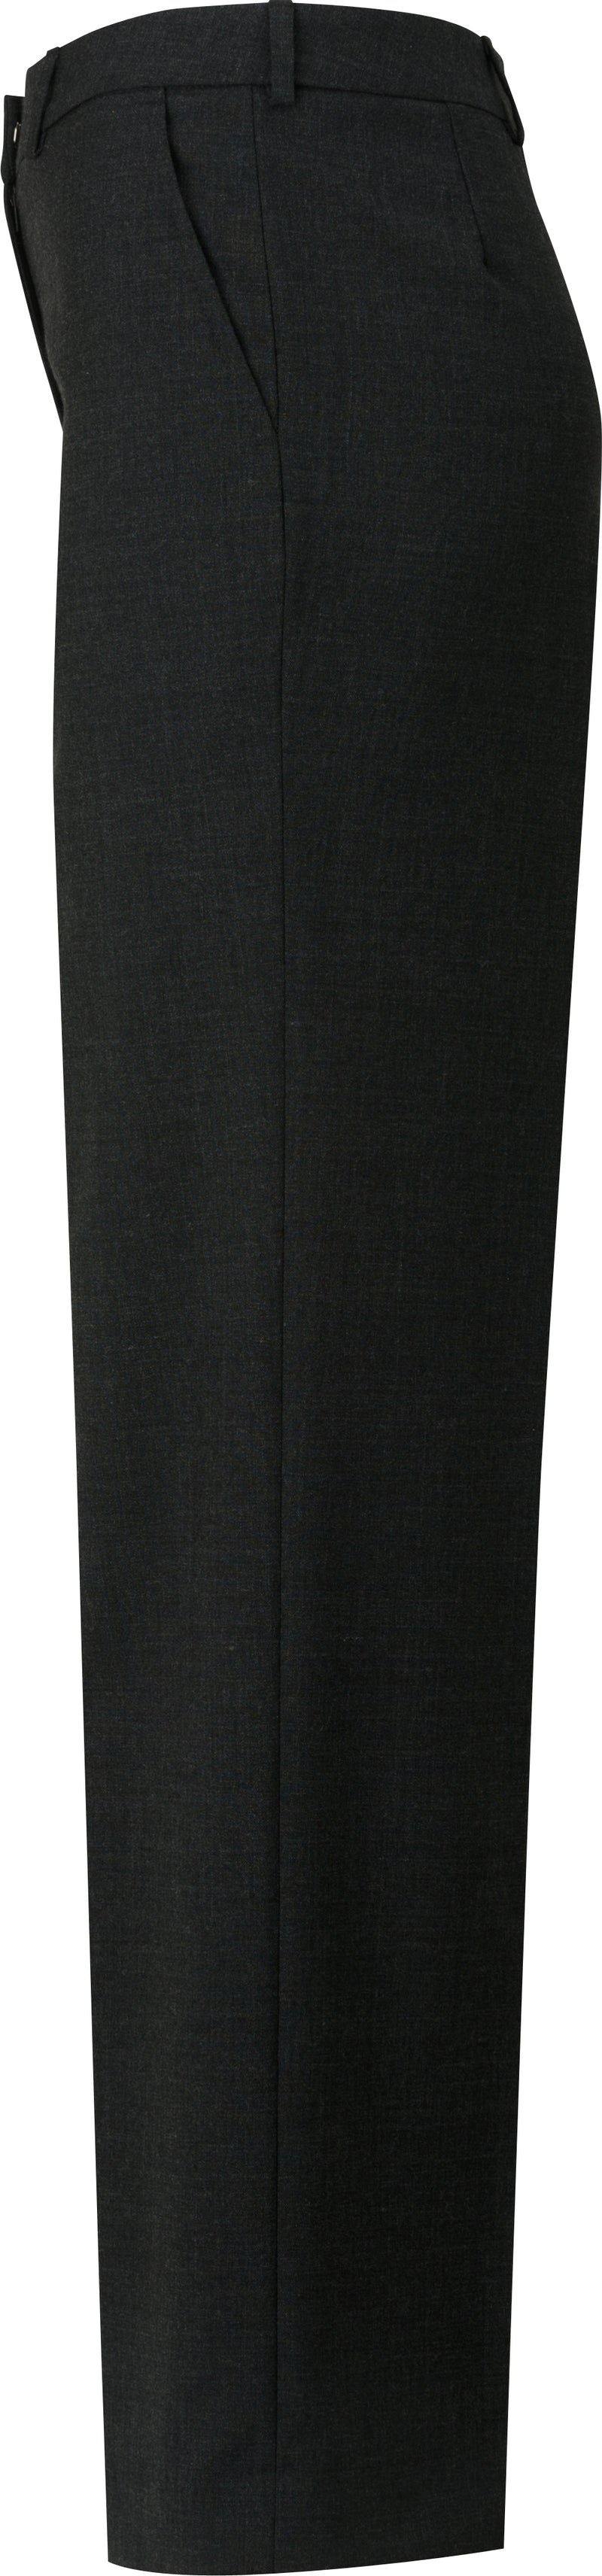 Edwards [8531] Ladies EZ Fit Flat-Front Dress Pant. Redwood & Ross Signature Collection. Live Chat For Bulk Discounts.